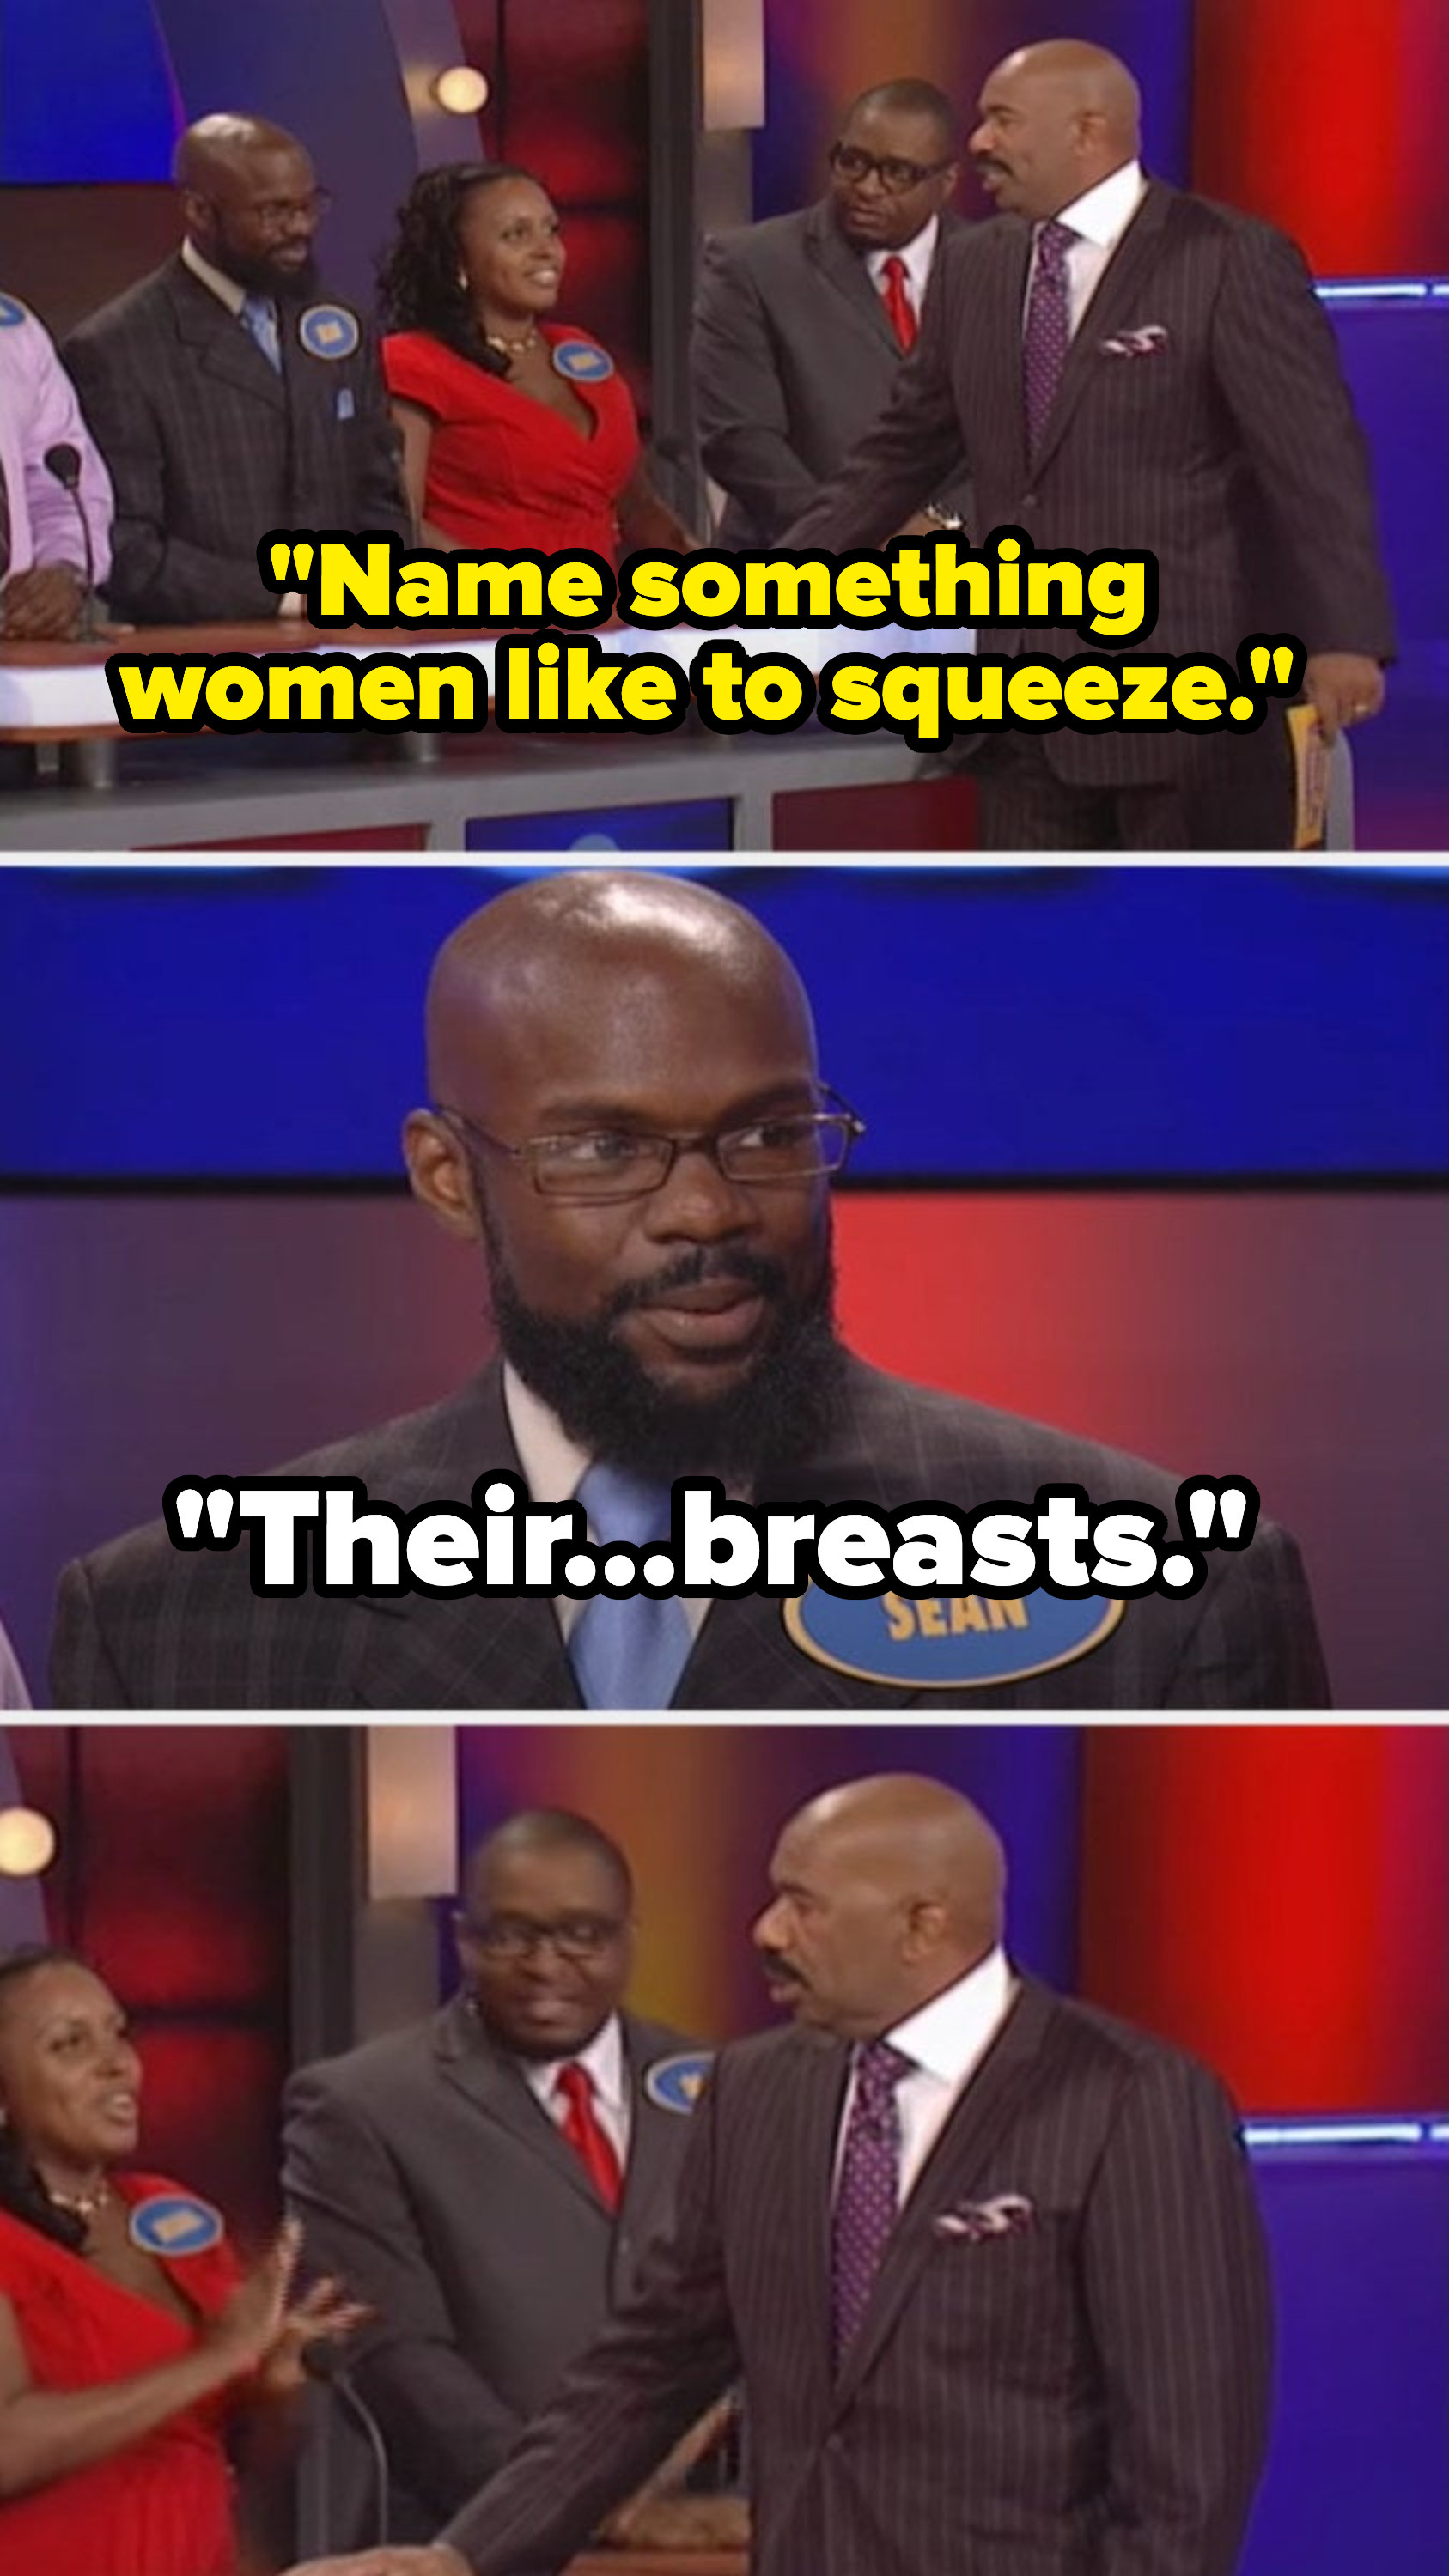 史蒂夫说,“名字女性喜欢挤,“和选手的回答,“他们的乳房,“让史蒂夫难以置信地盯着看